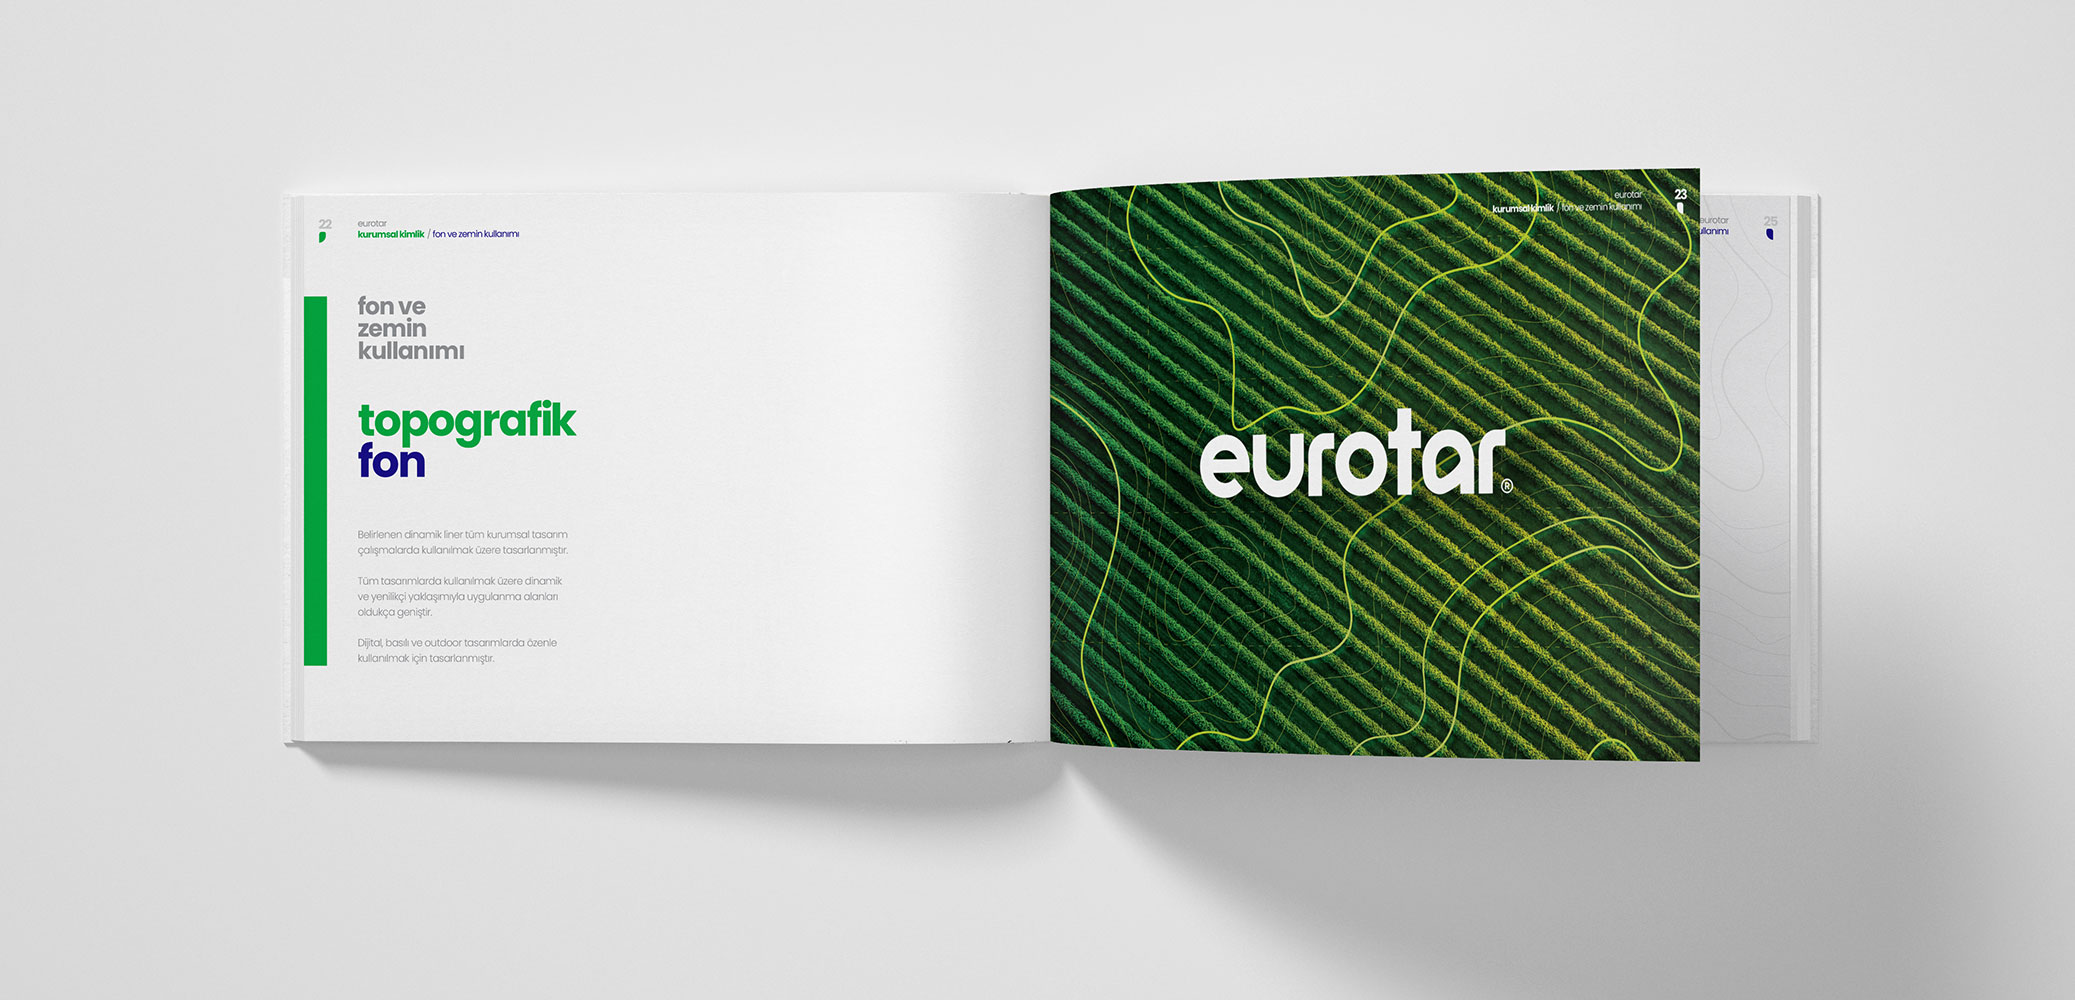 Eurotar Kurumsal Kimlik Tasarım / Fon ve Zemin Kullanımı